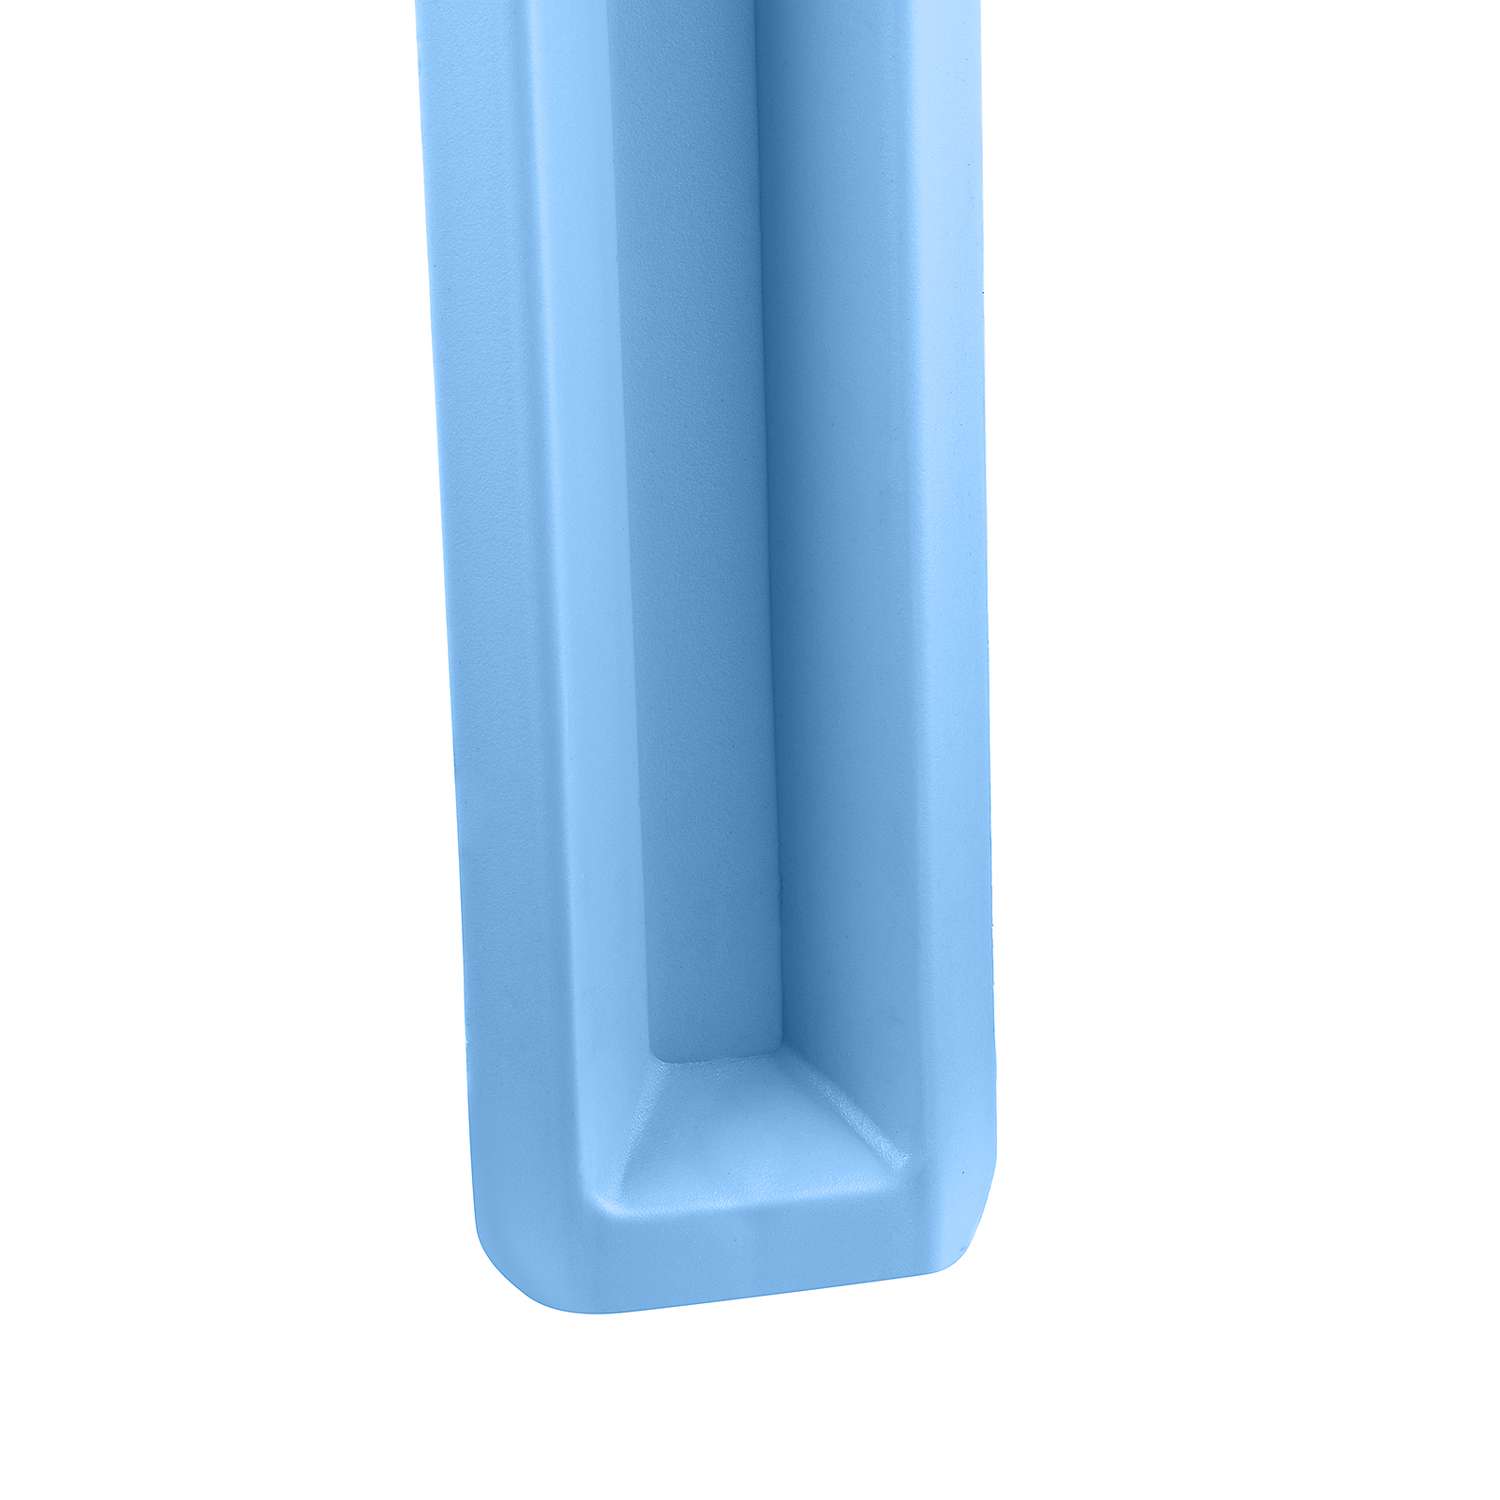 Стол десткий KETT-UP ОСЬМИНОЖКА пластиковый голубой - фото 4